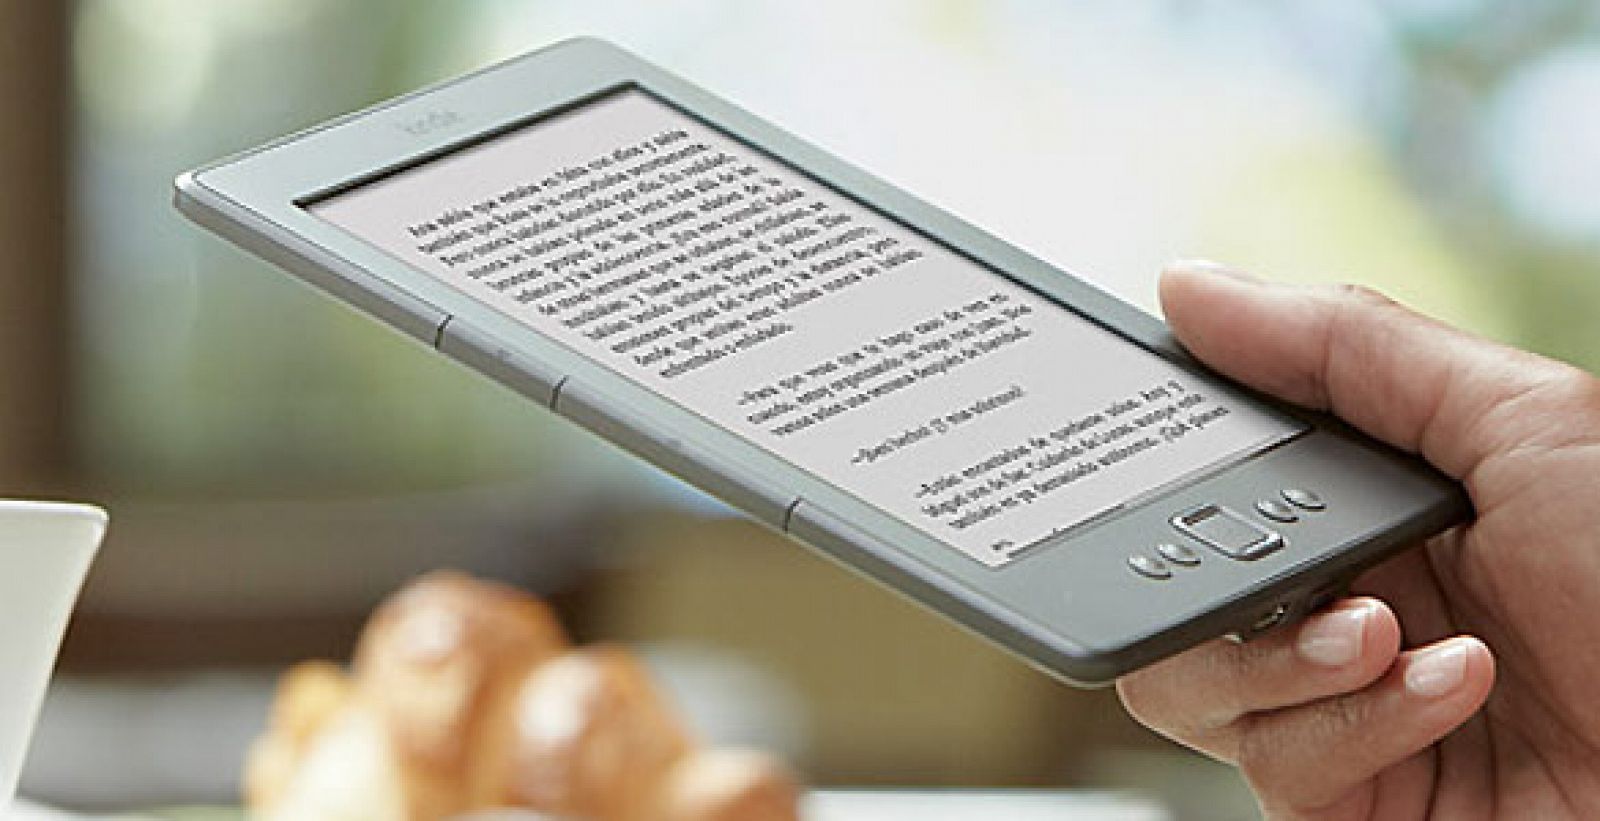 La compañía Amazon lanza su lector de e-books en España.